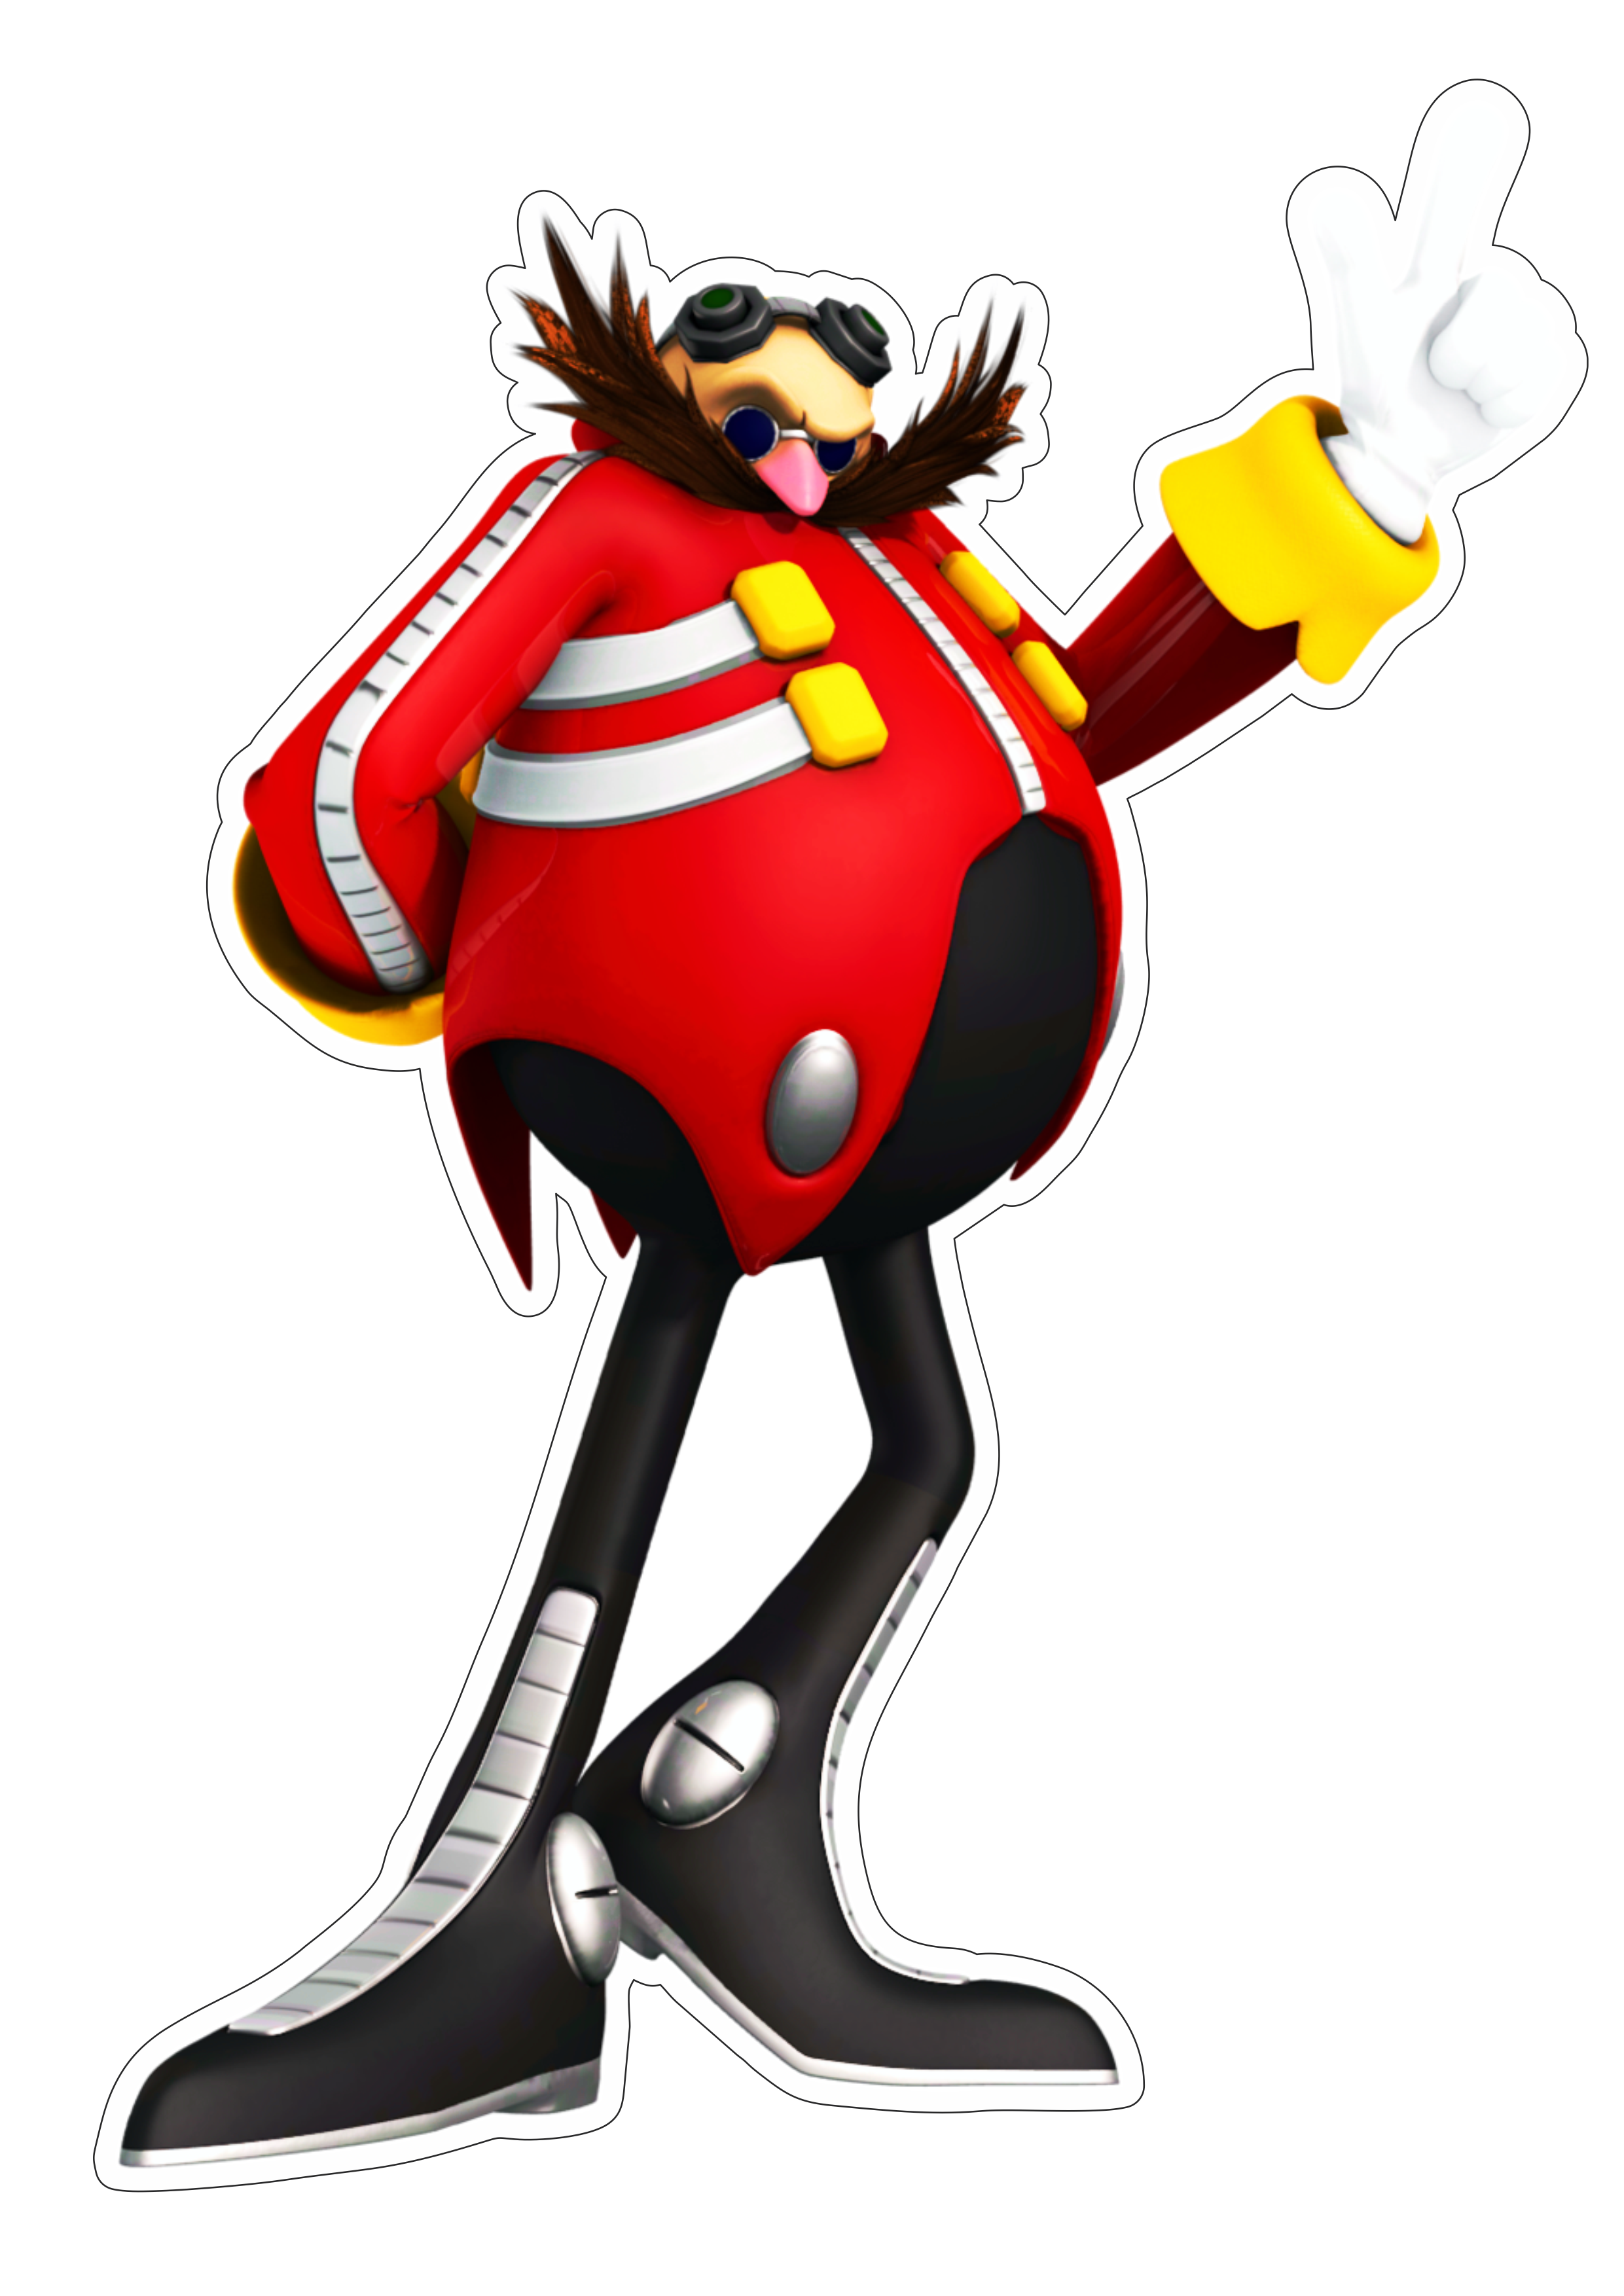 Sonic the hedgehog personagem de game doutor Ivoro botnik fundo transparente com contorno png